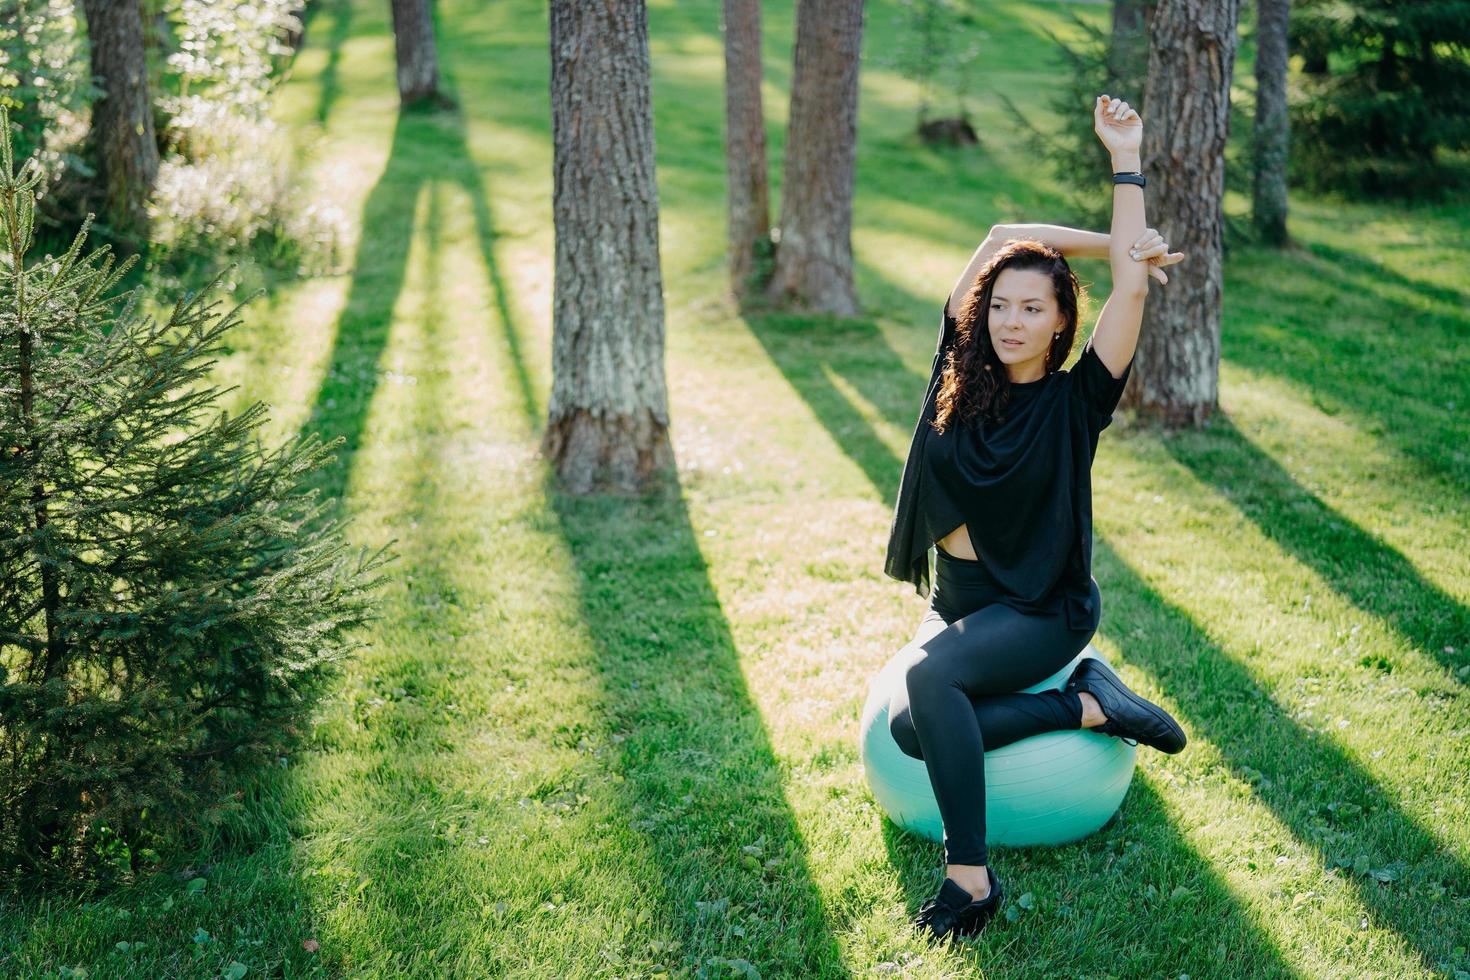 foto de mujer morena activa y flexible que se estira con fitball, hace pilates o ejercicios de fitness, posa sobre hierba verde durante el soleado día de primavera en el bosque, disfruta de ejercicios gimnásticos al aire libre.